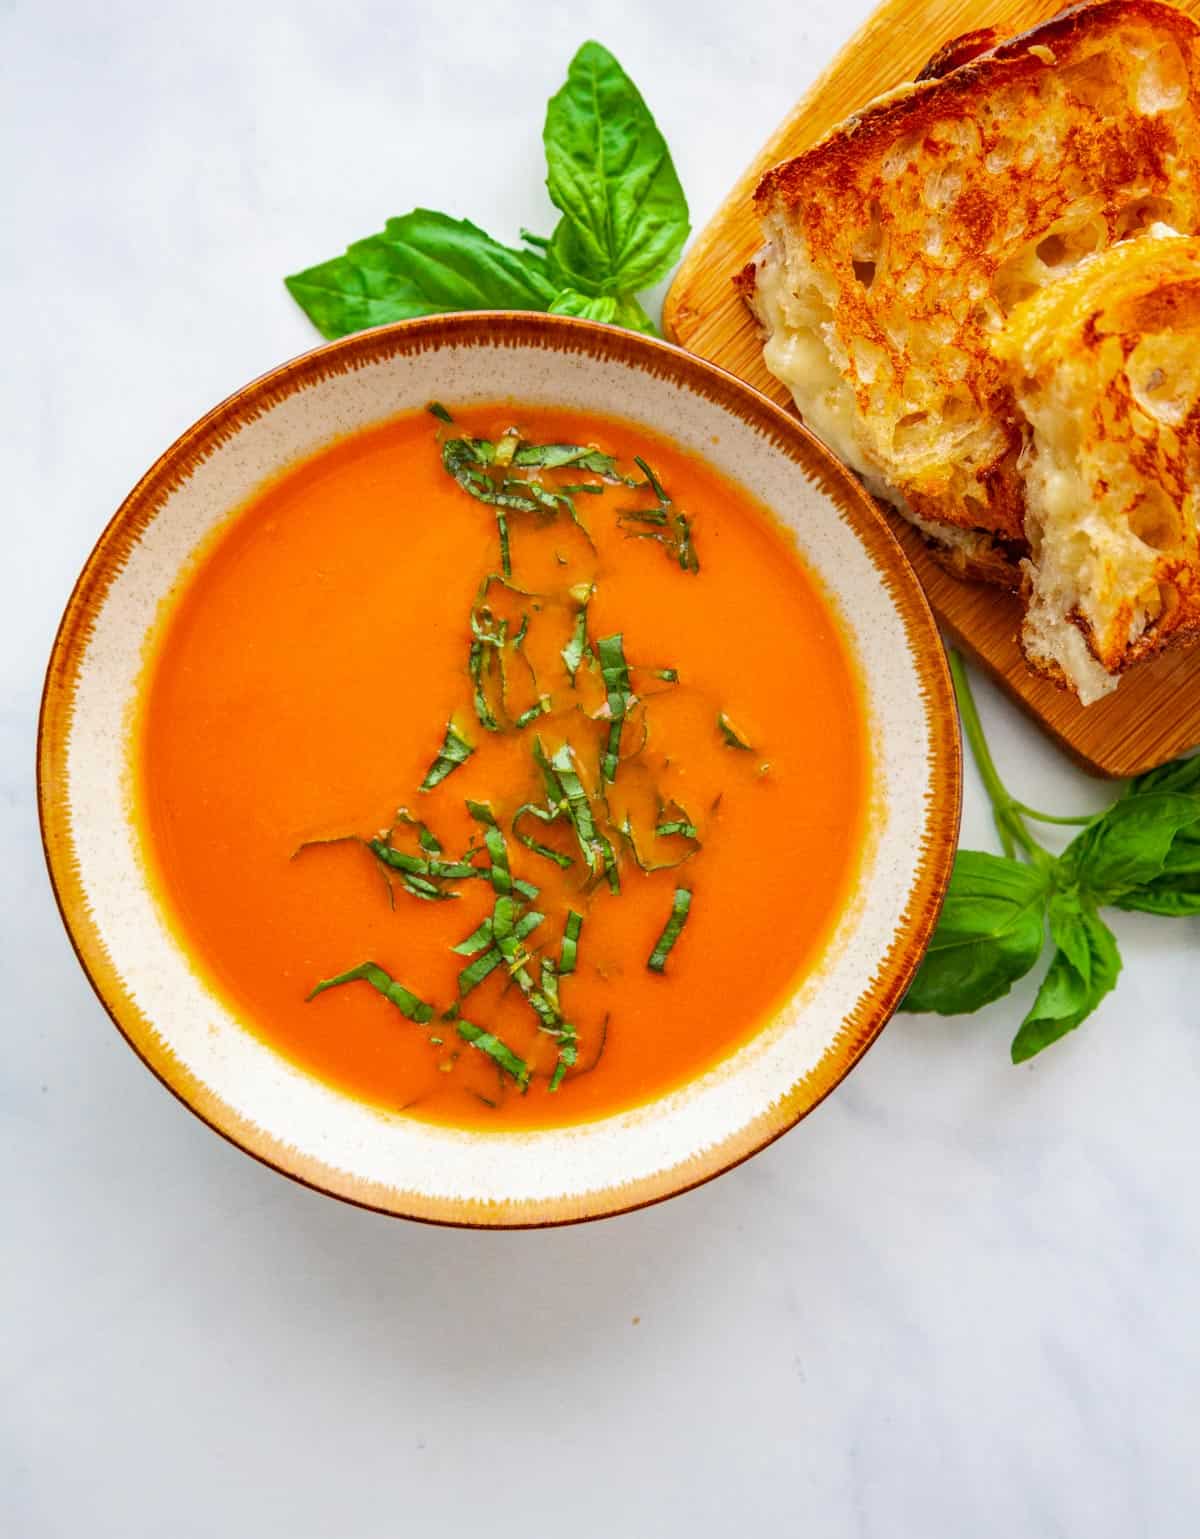 a bowl of tomato soup